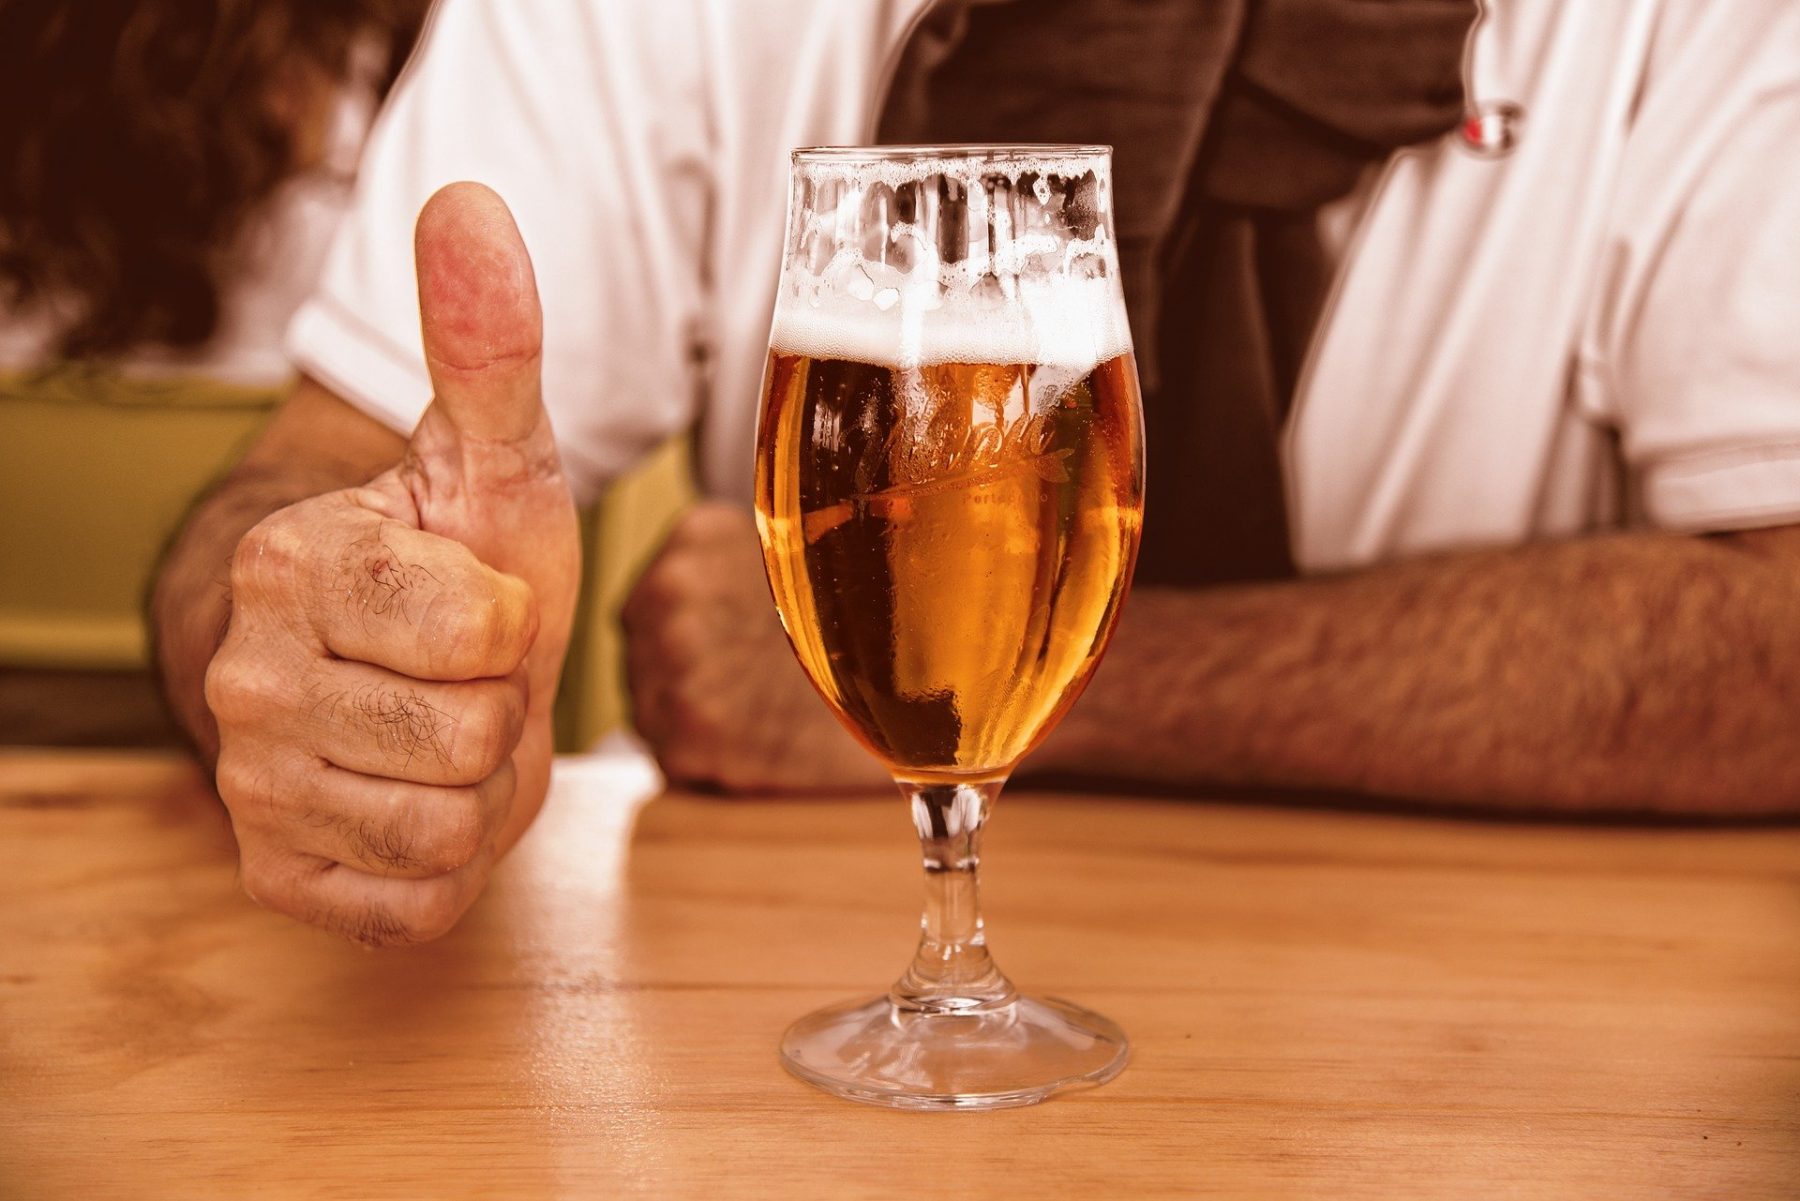 Αλκοόλ ηλικιωμένοι: Η μέτρια κατανάλωση αλκοόλ ενδέχεται να ενισχύσει την υγεία στους ηλικιωμένους